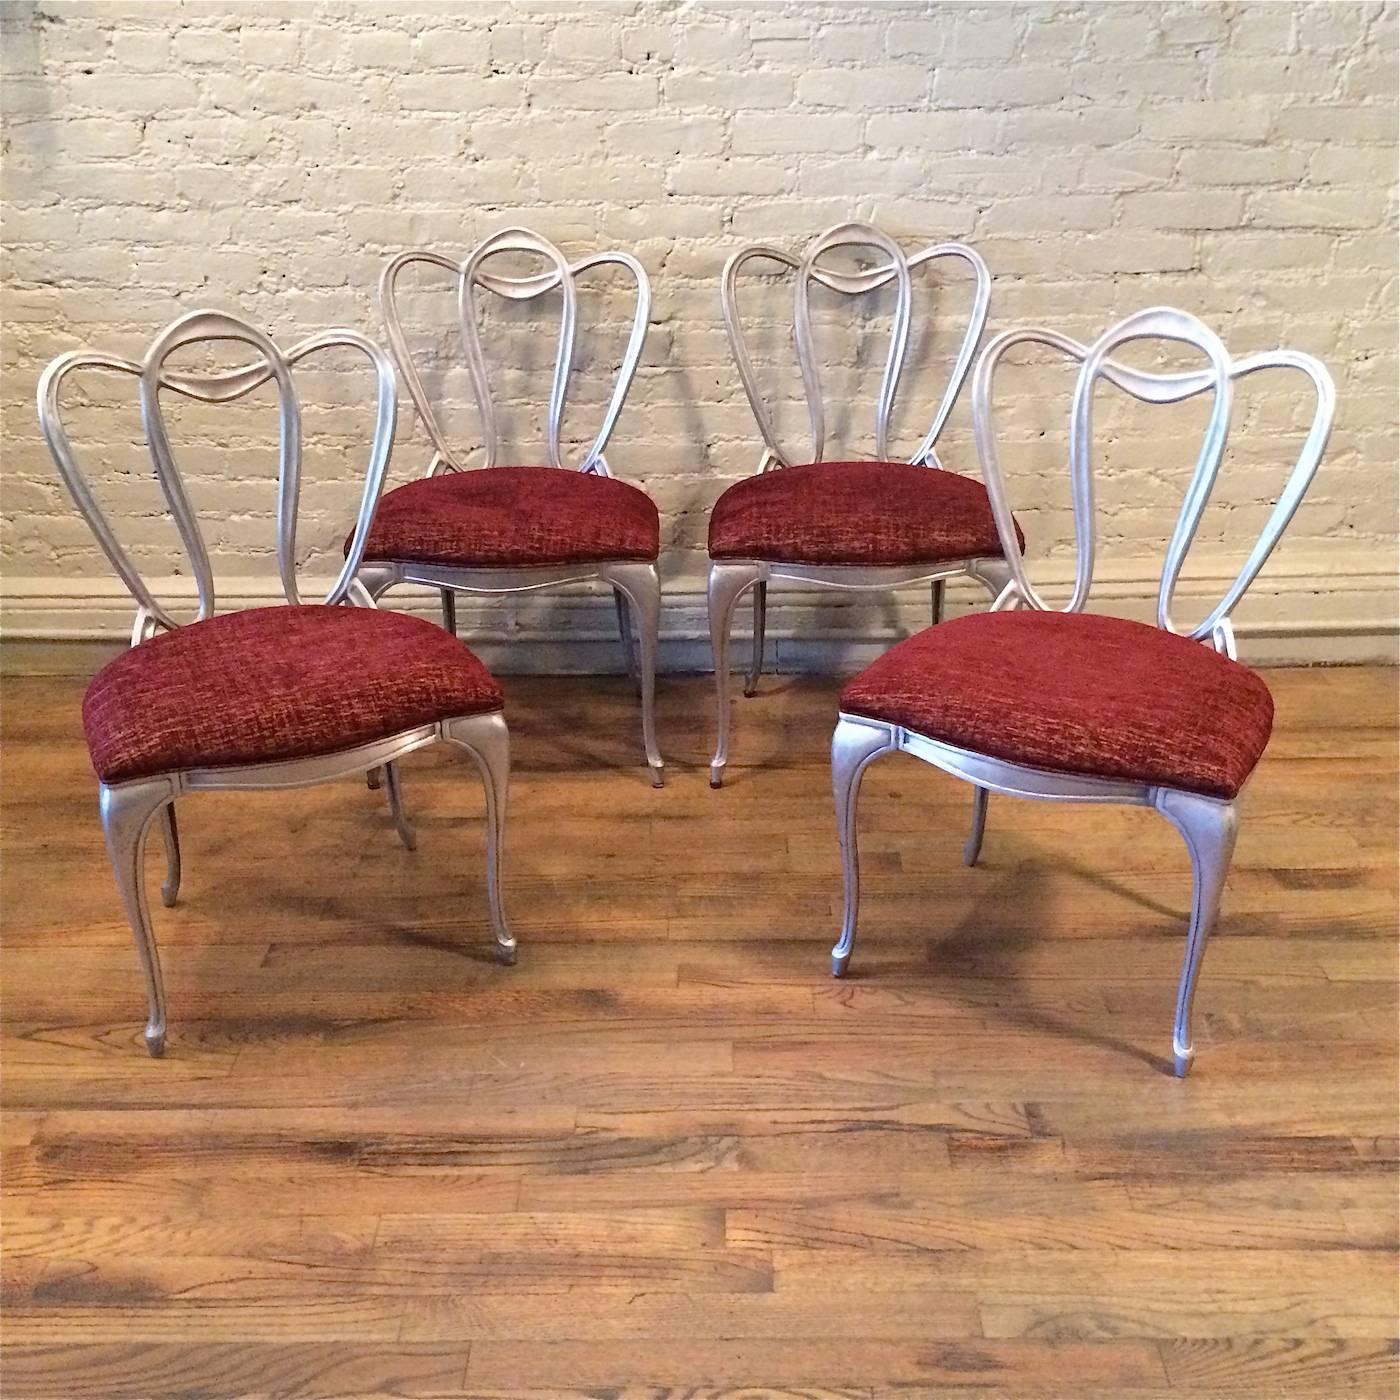 Ensemble de quatre chaises Art Nouveau, Hollywood Regency, avec un motif organique de vigne, les cadres en aluminium moulé sont nouvellement tapissés dans un riche velours contrastant, bordeaux et or. La table Vitrolite illustrée est vendue